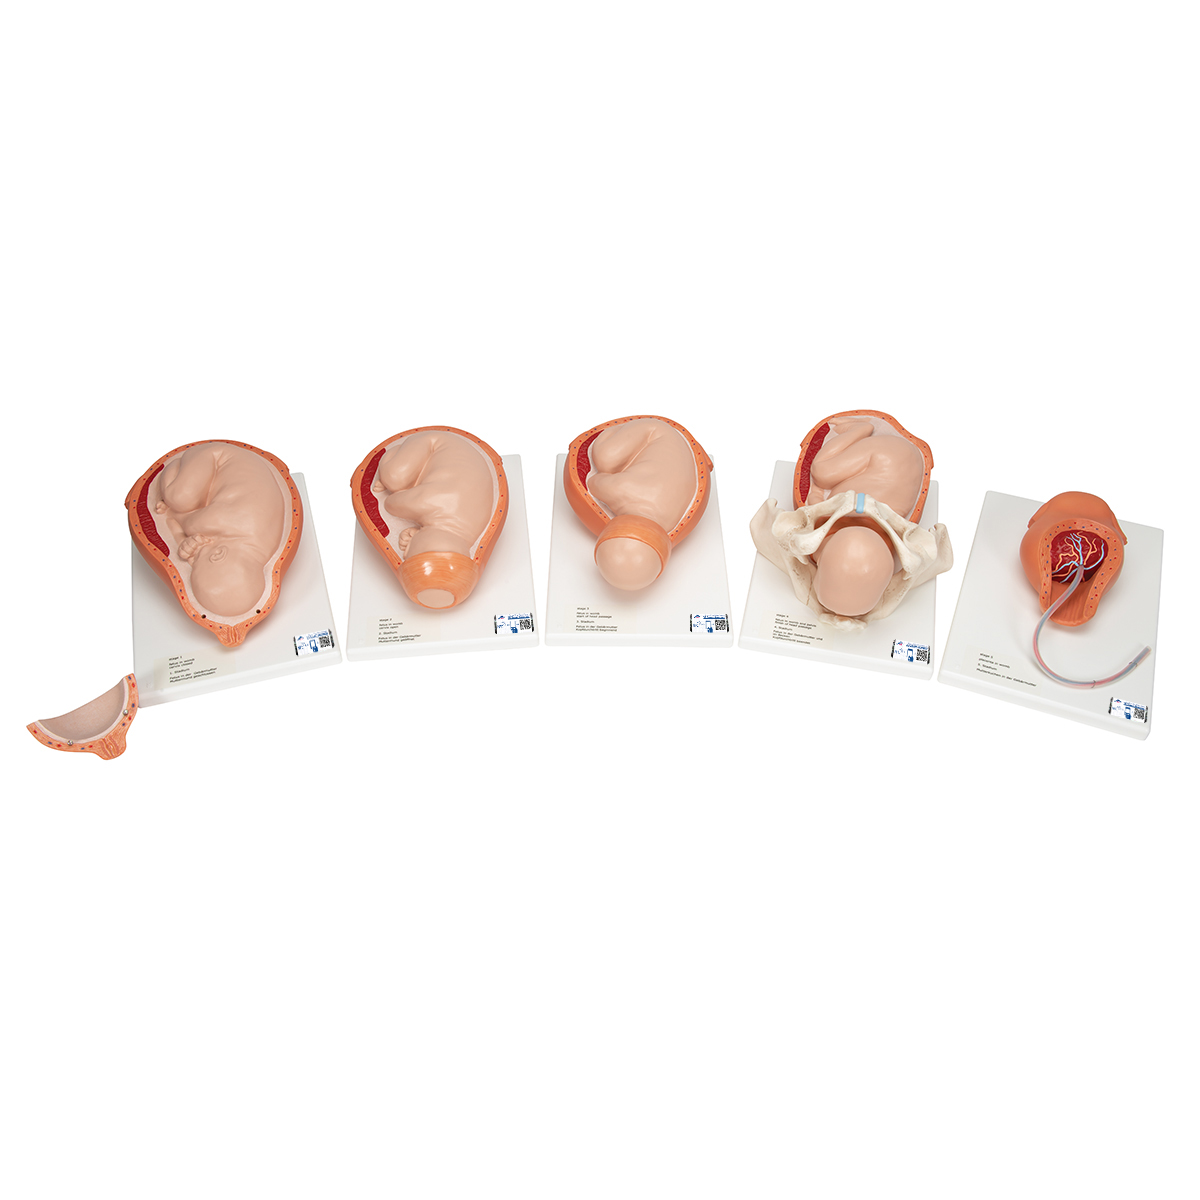 Geburtsstadien Modell - 3B Smart Anatomy, Bestellnummer 1001258, VG392, 3B Scientific